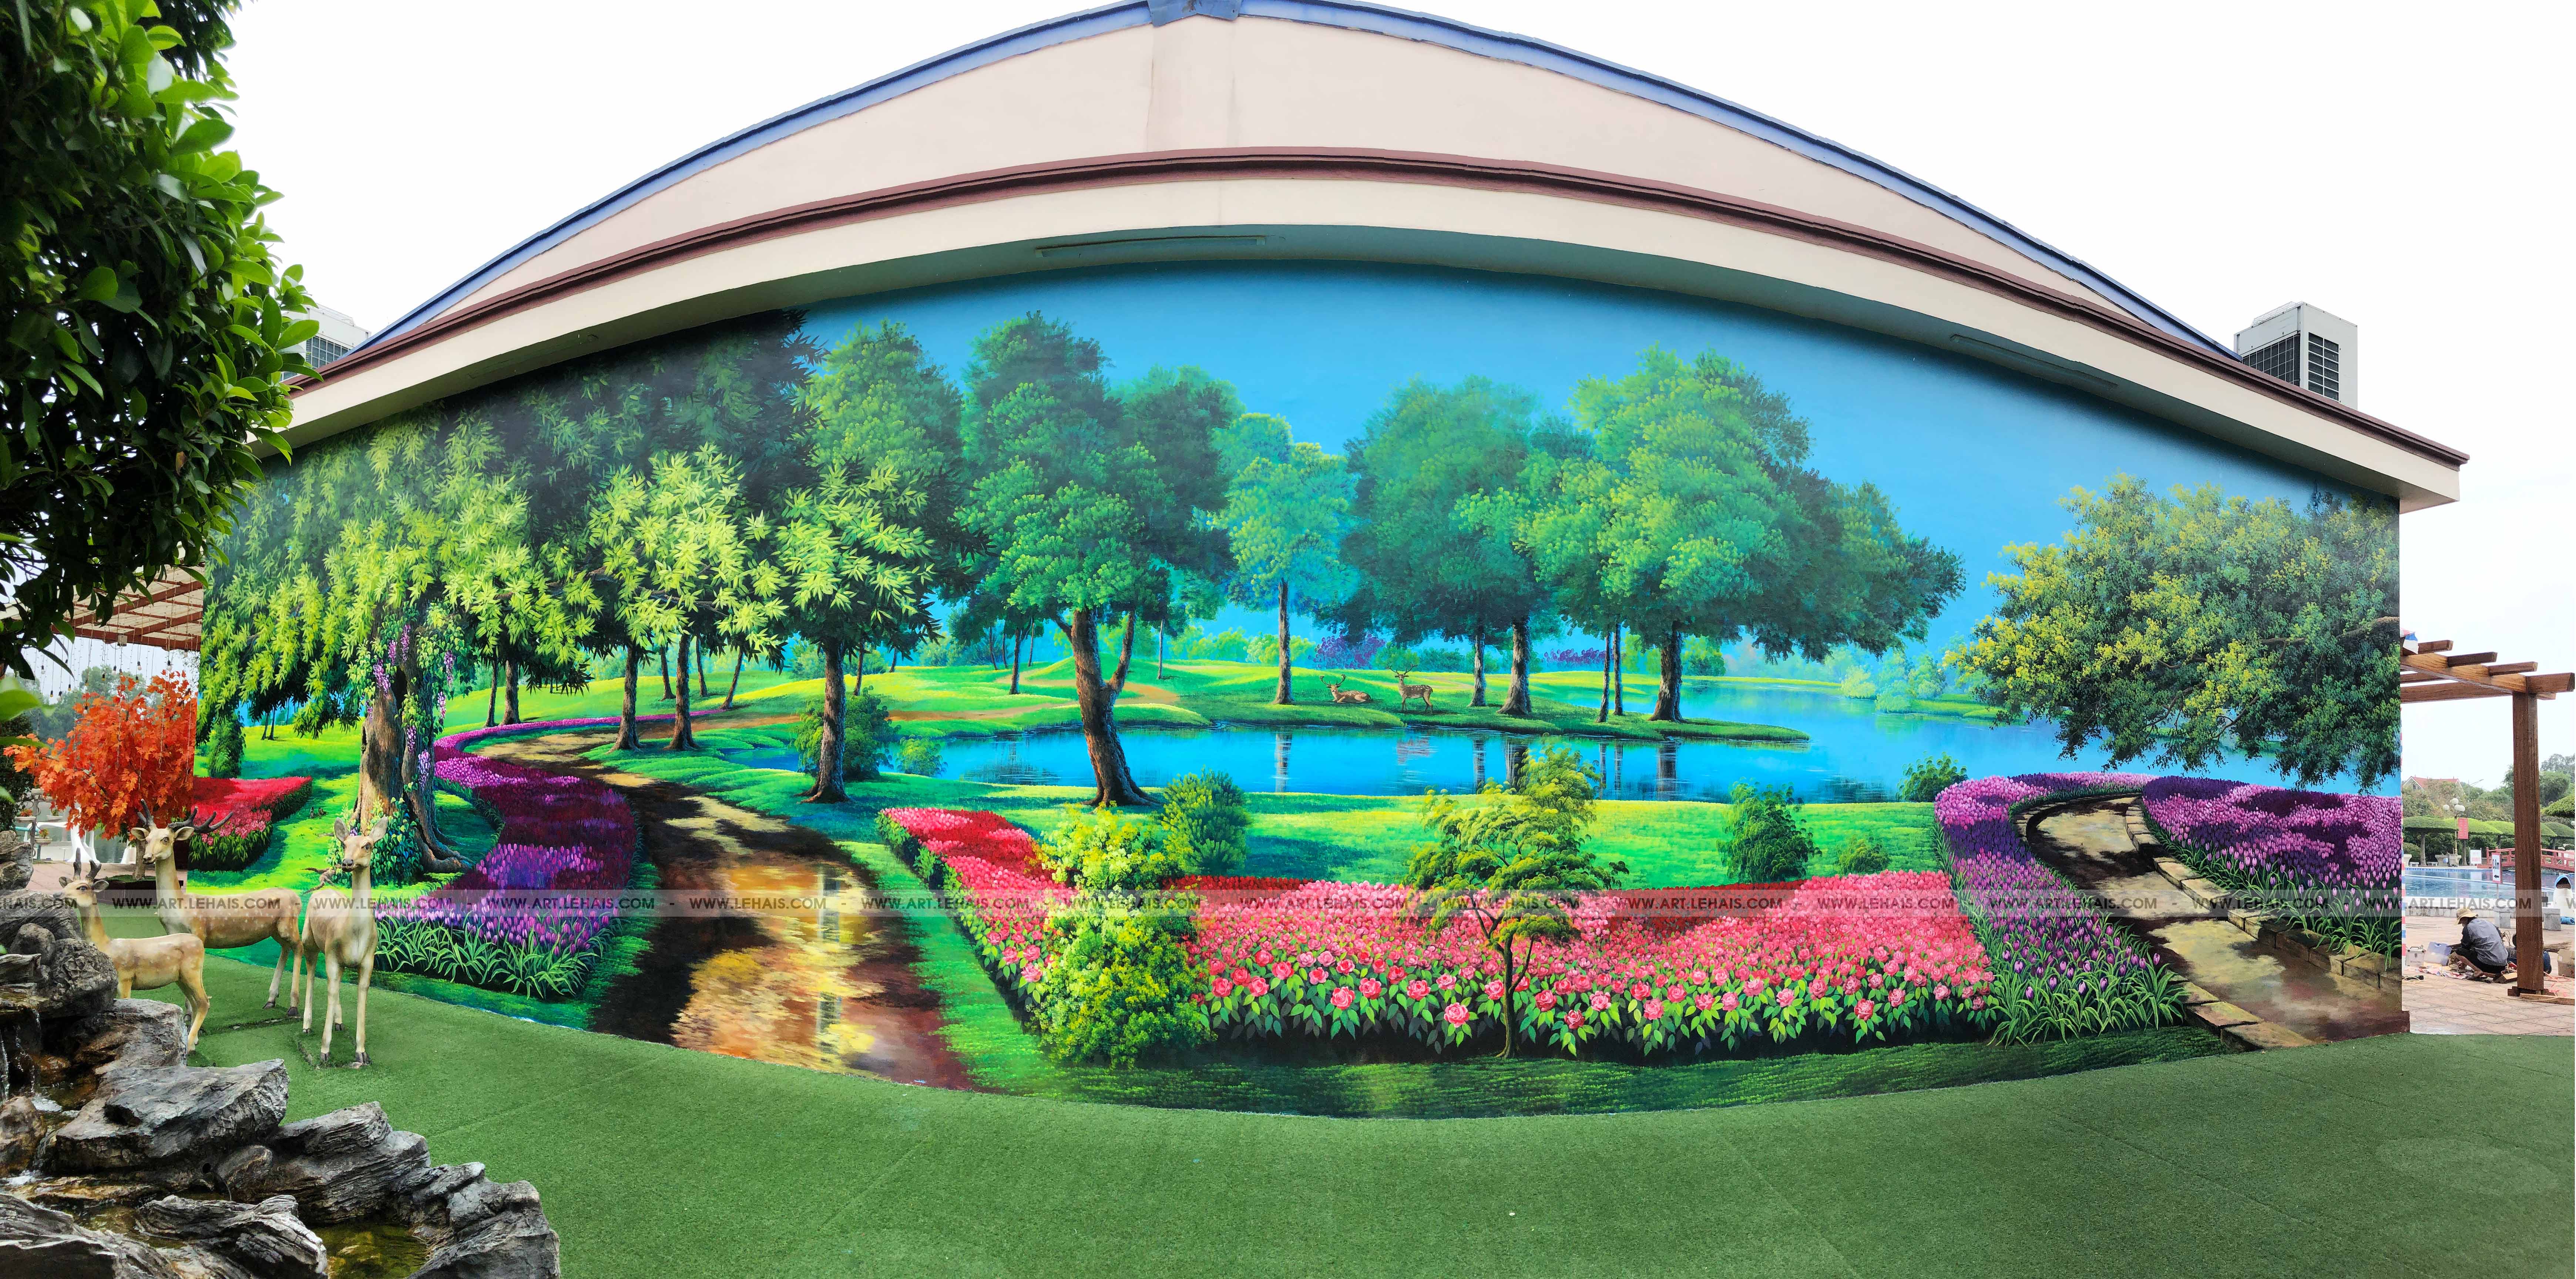 Vẽ tranh phong cảnh 3D trên tường tại khu du lịch sinh thái Dũng Tân ở Sông Công, Thái Nguyên - TT192LHAR 1